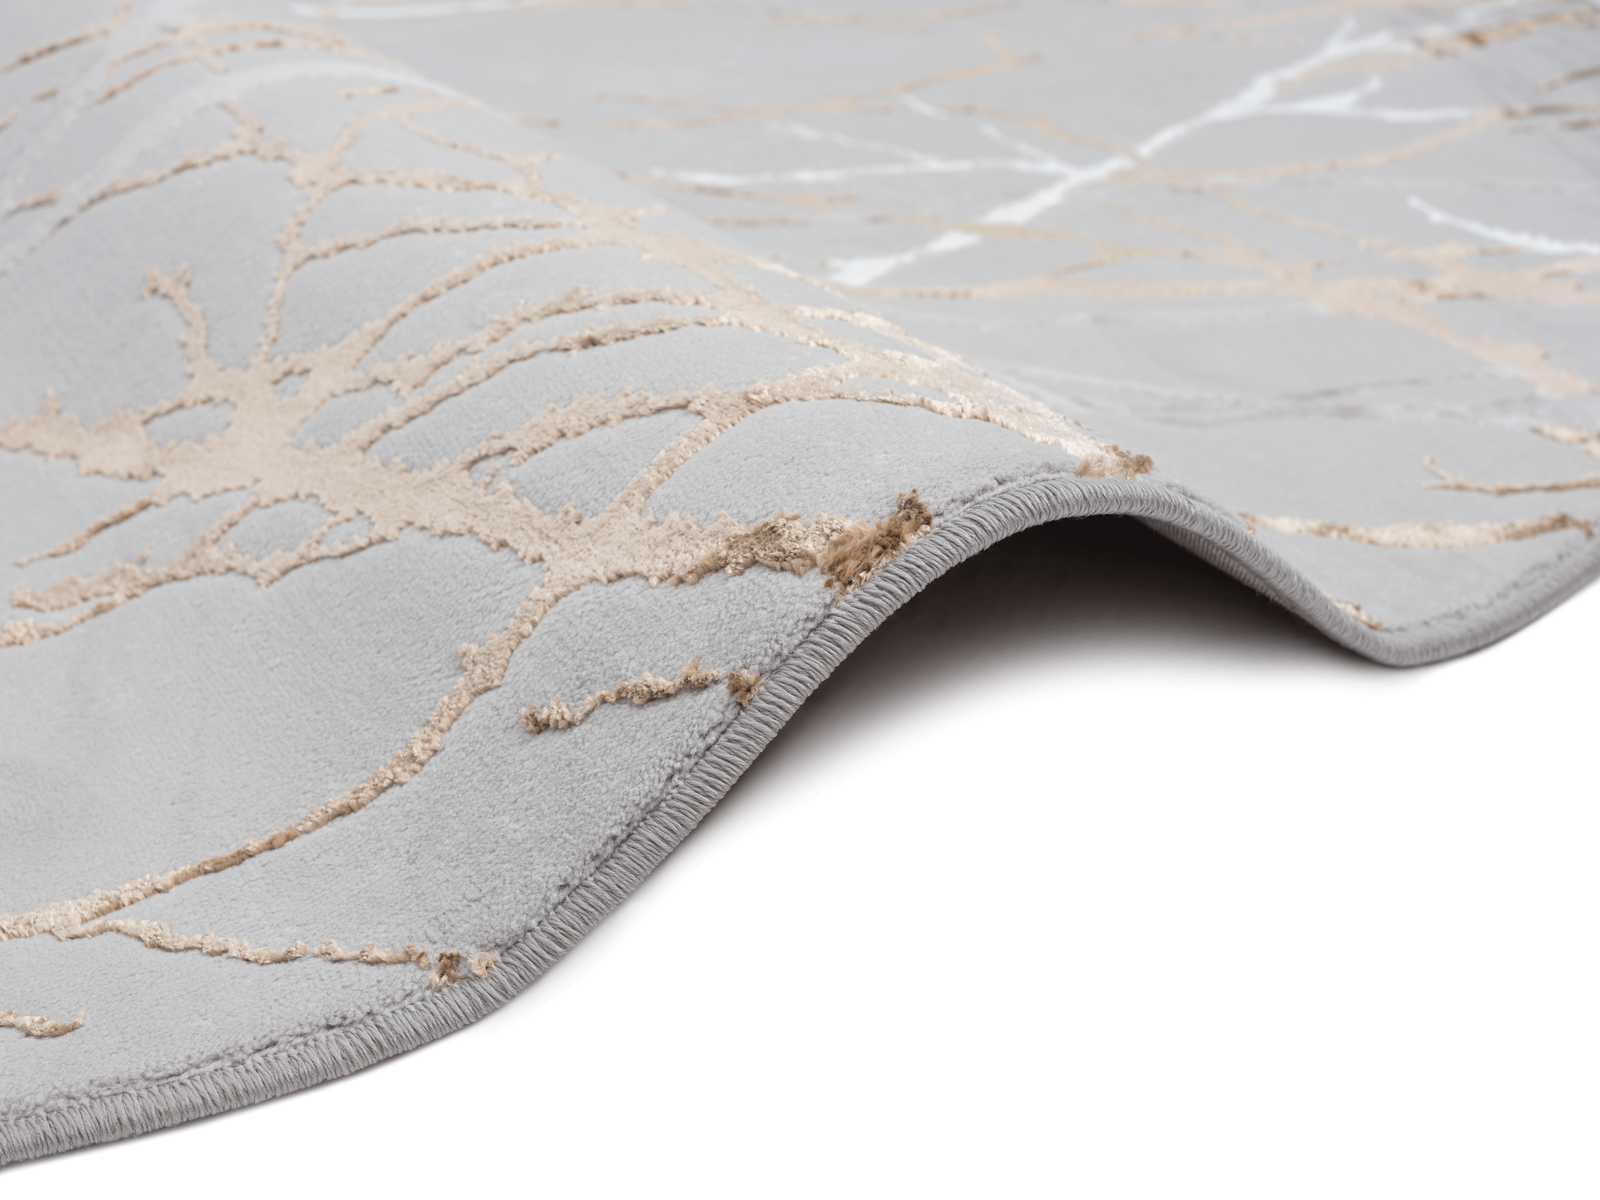             Hoogpolig tapijt met patroon in grijs - 230 x 160 cm
        